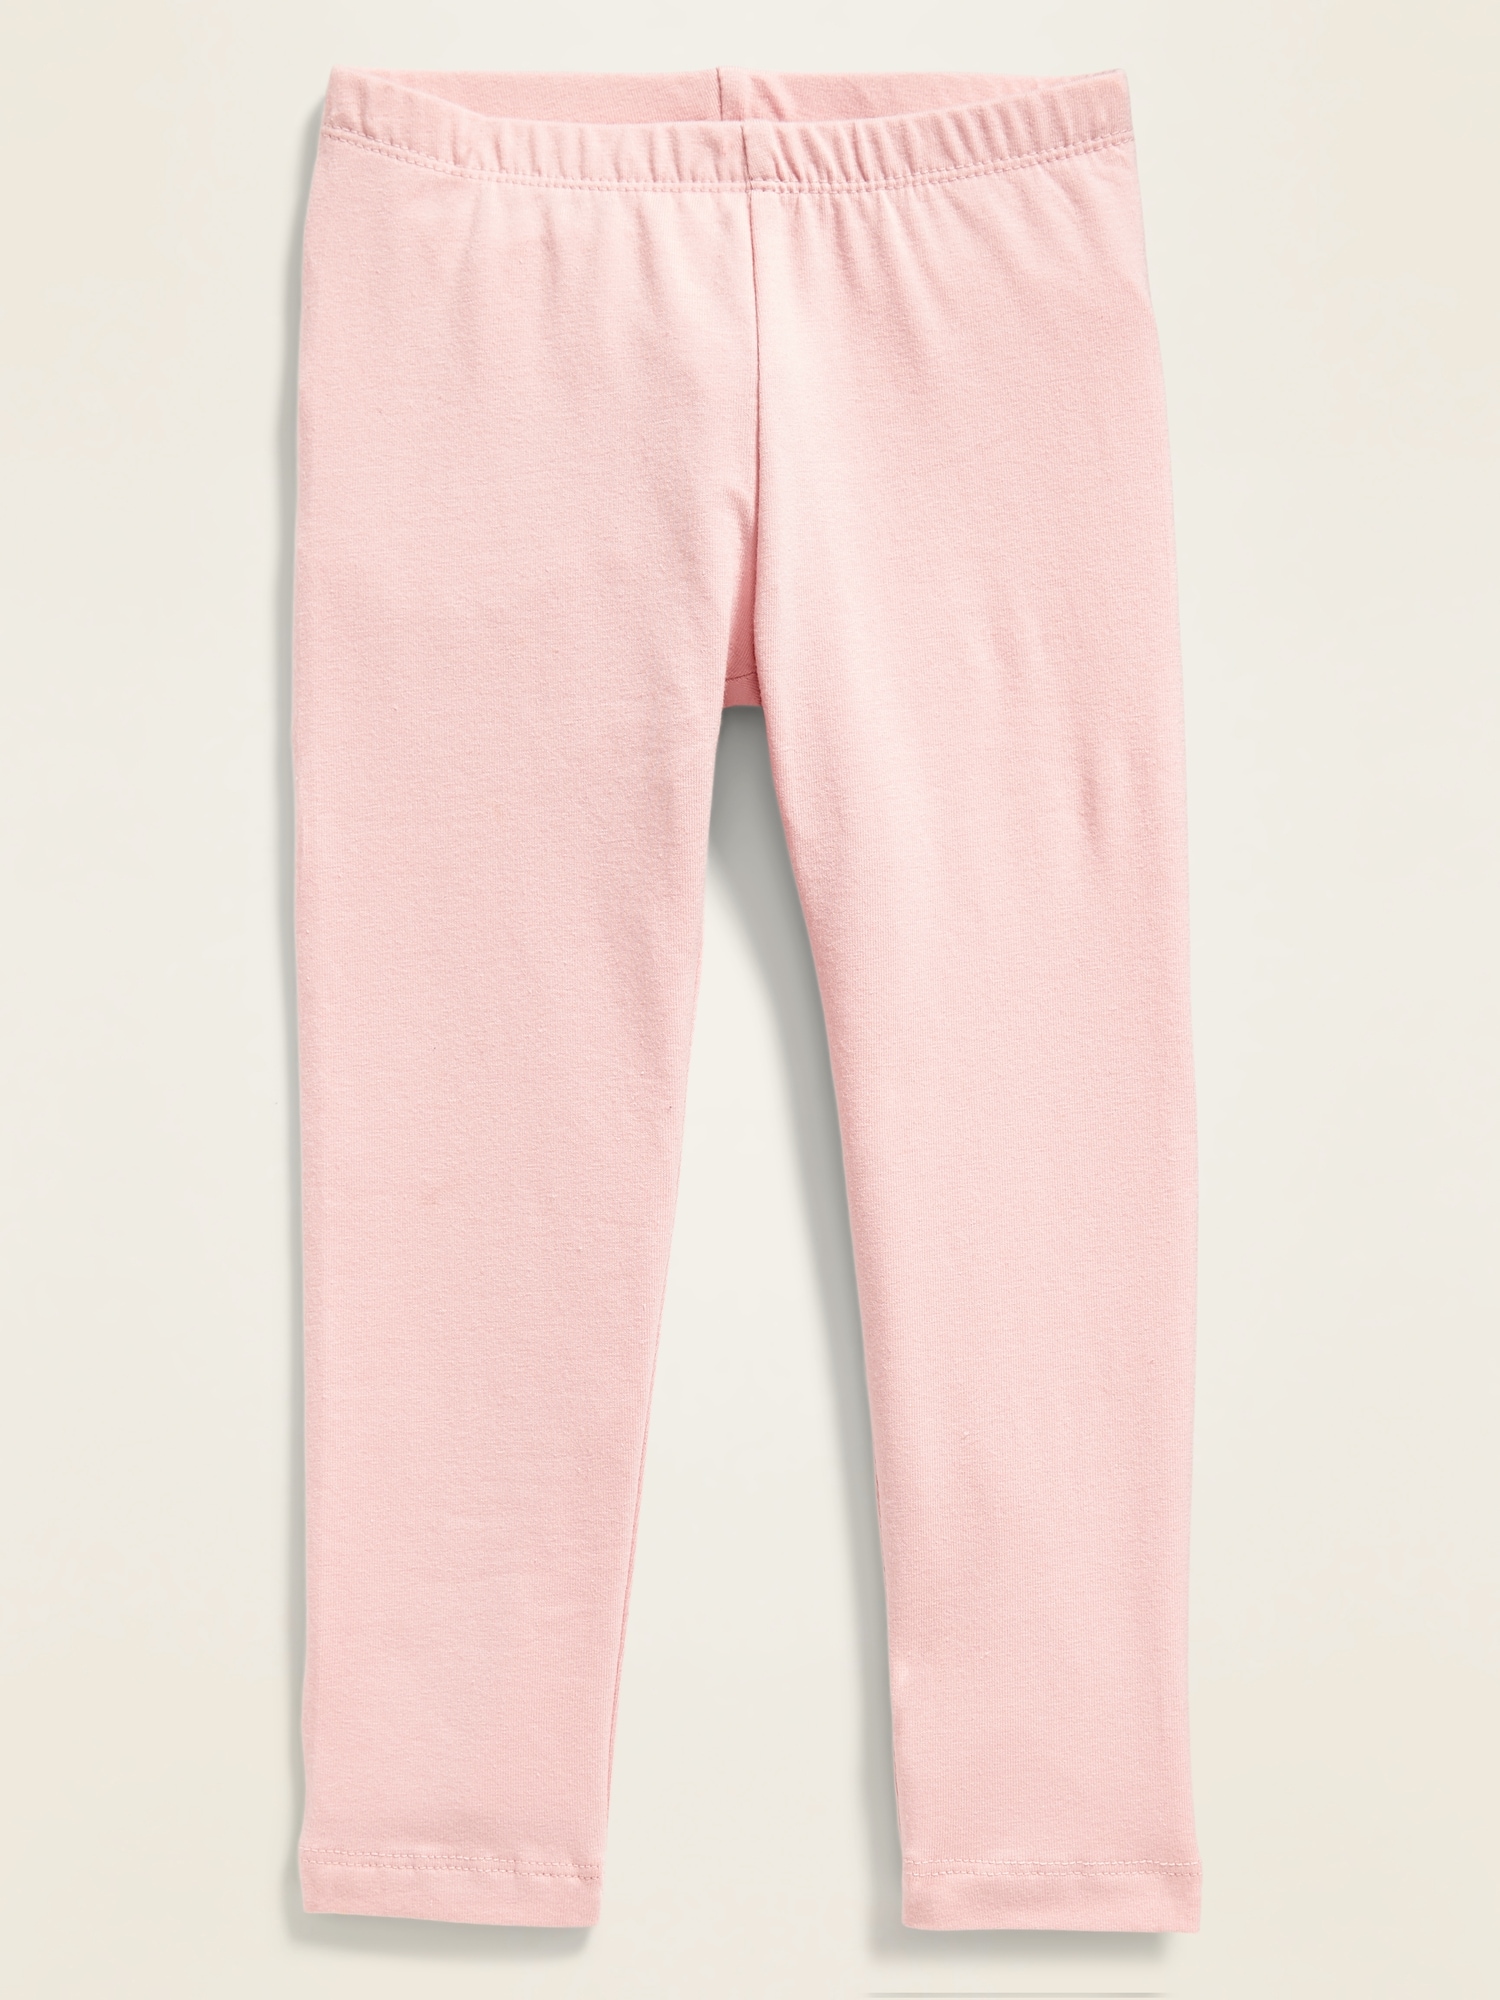 Old Navy Full-Length Jersey Leggings for Toddler Girls pink. 1